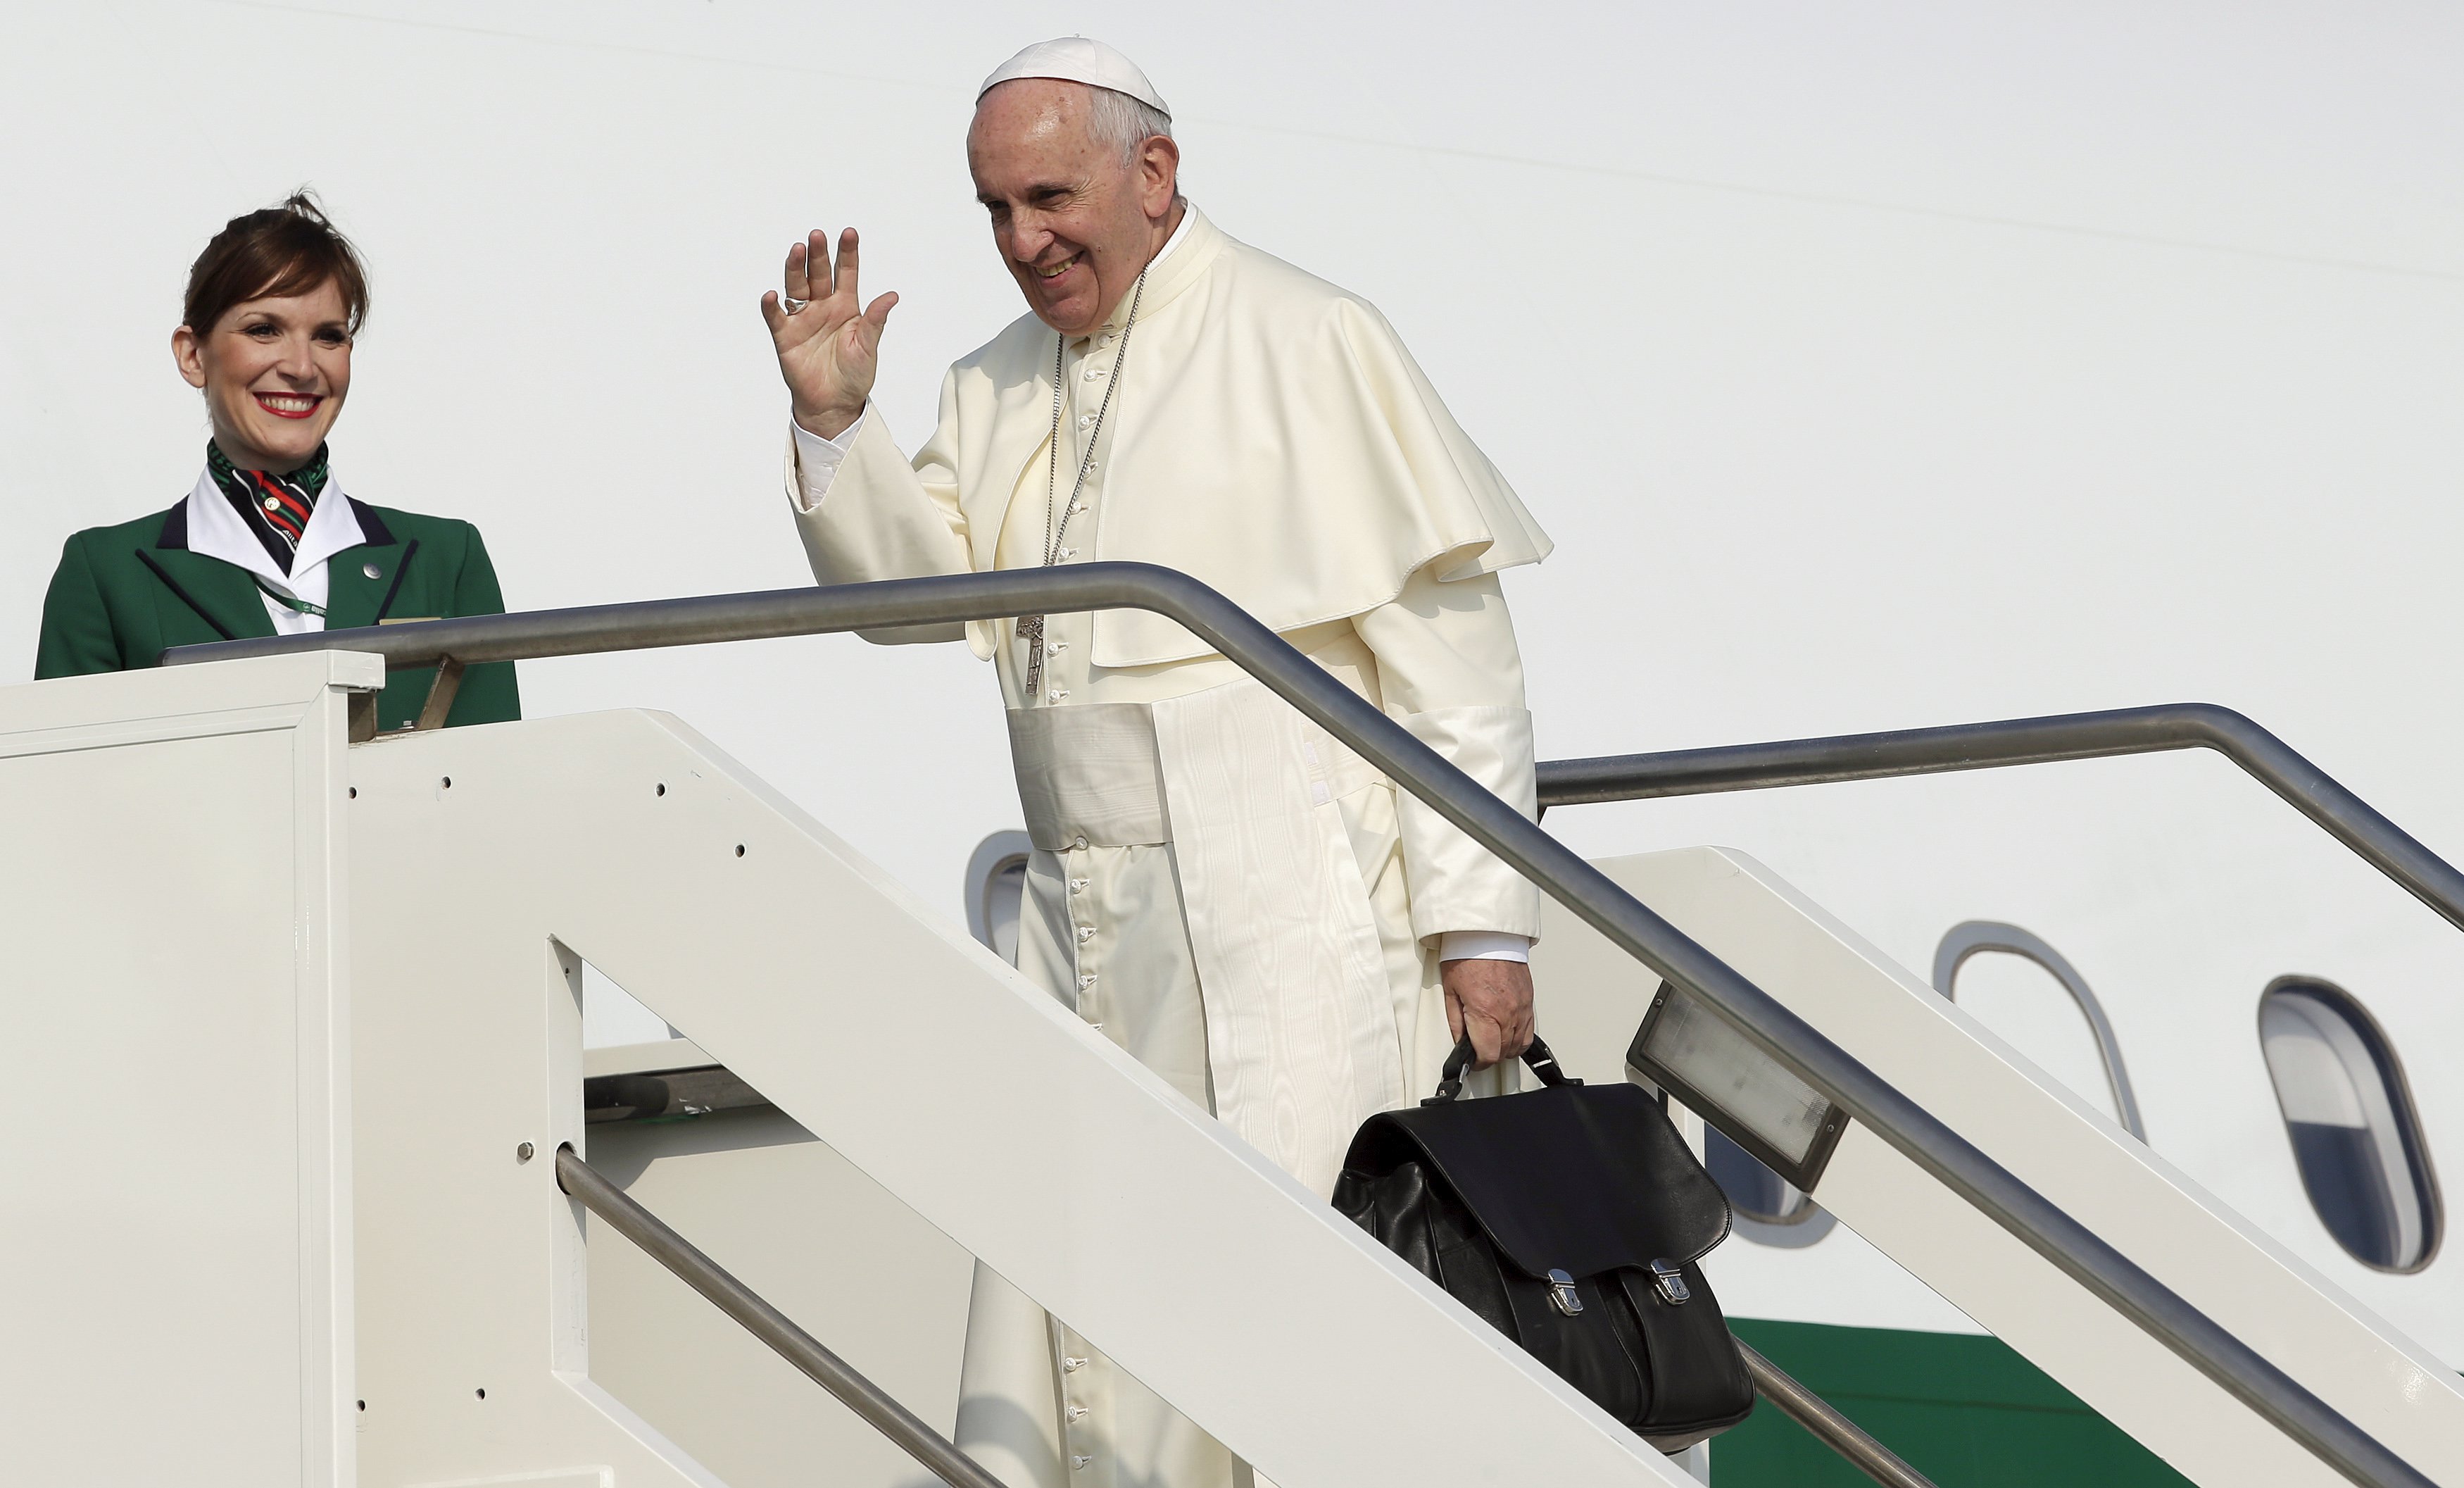 El Papa viajará a Kenia, Uganda y República Centroafricana en noviembre